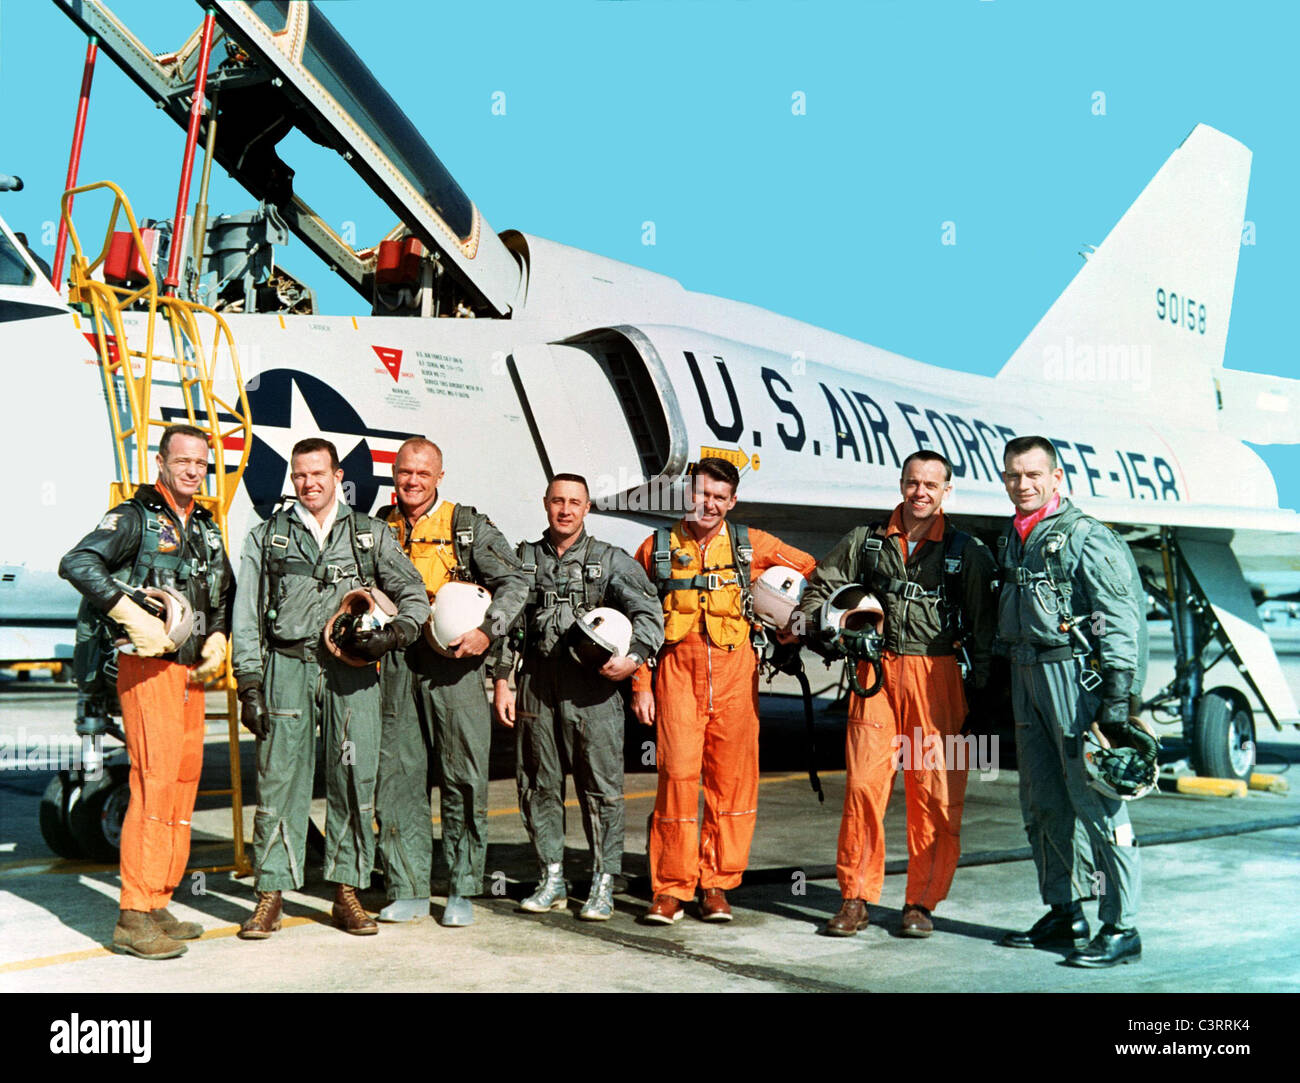 Les sept astronautes de mercure au cours de la formation à la NASA Langley Research Center projet Mercure. Banque D'Images